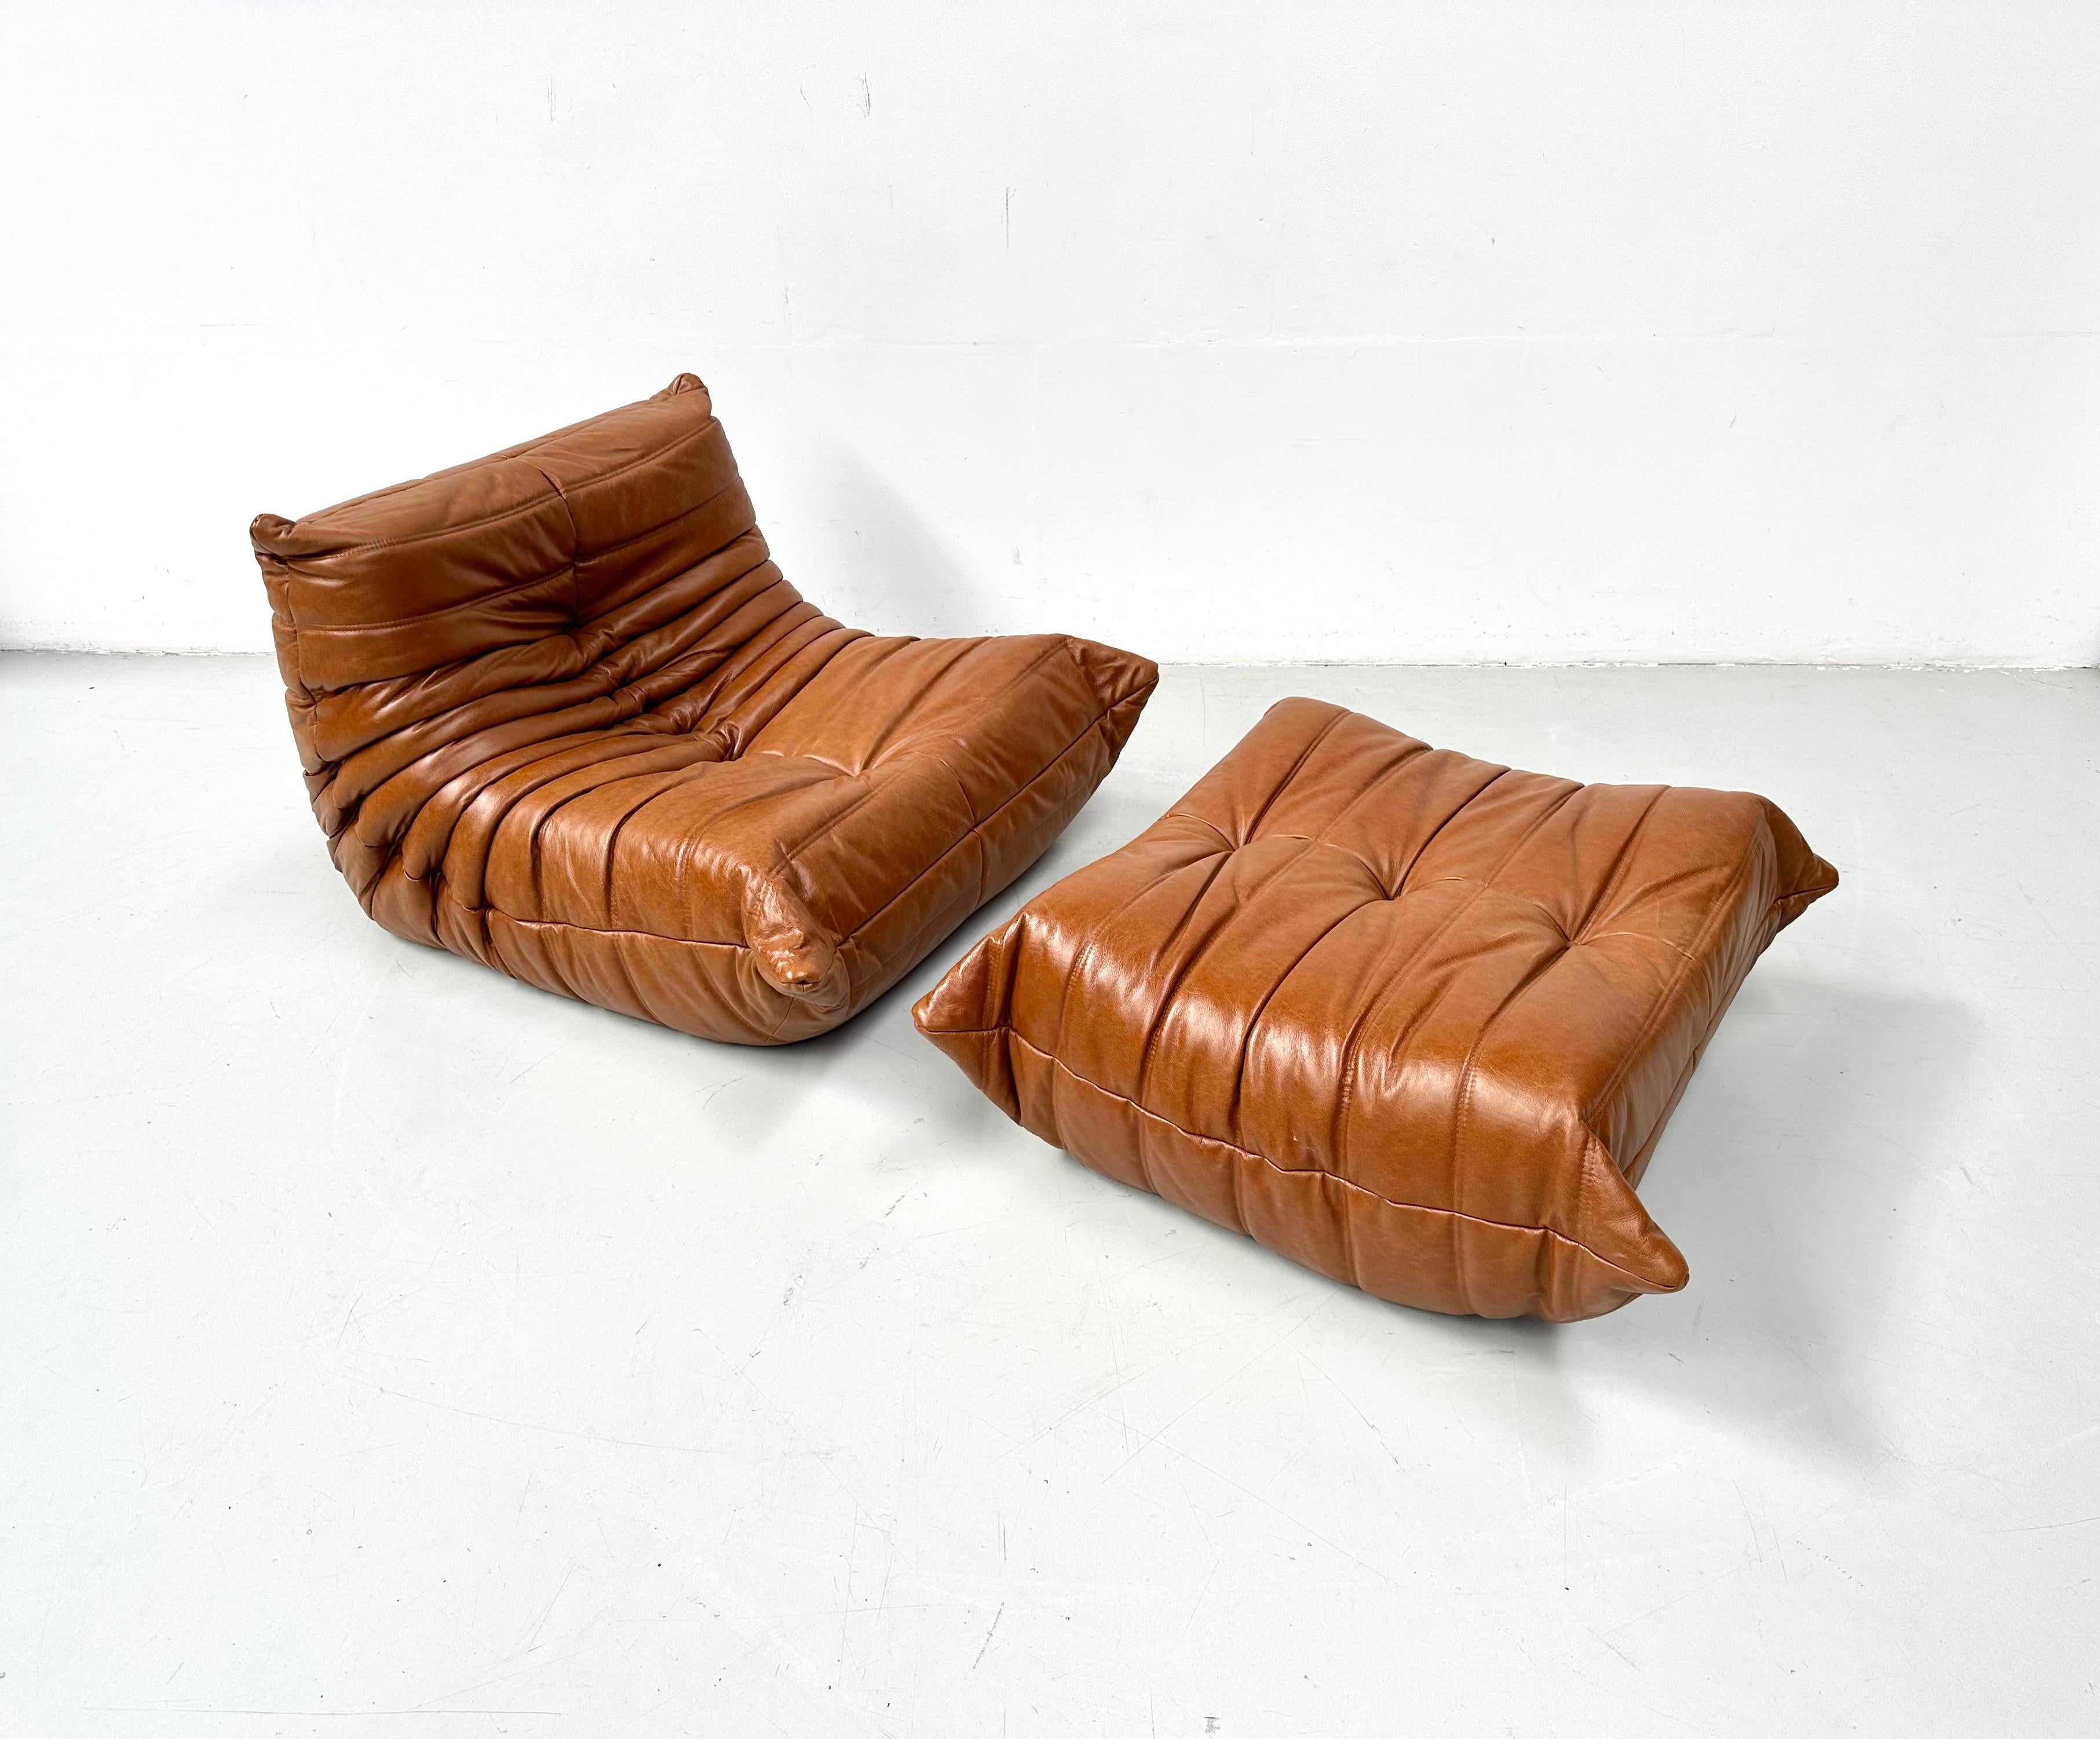 Le Togo est conçu par Michel Ducaroy en 1973.
C'est le premier meuble en mousse qui a conservé son confort. Fabriqué par Ligne Roset en France.